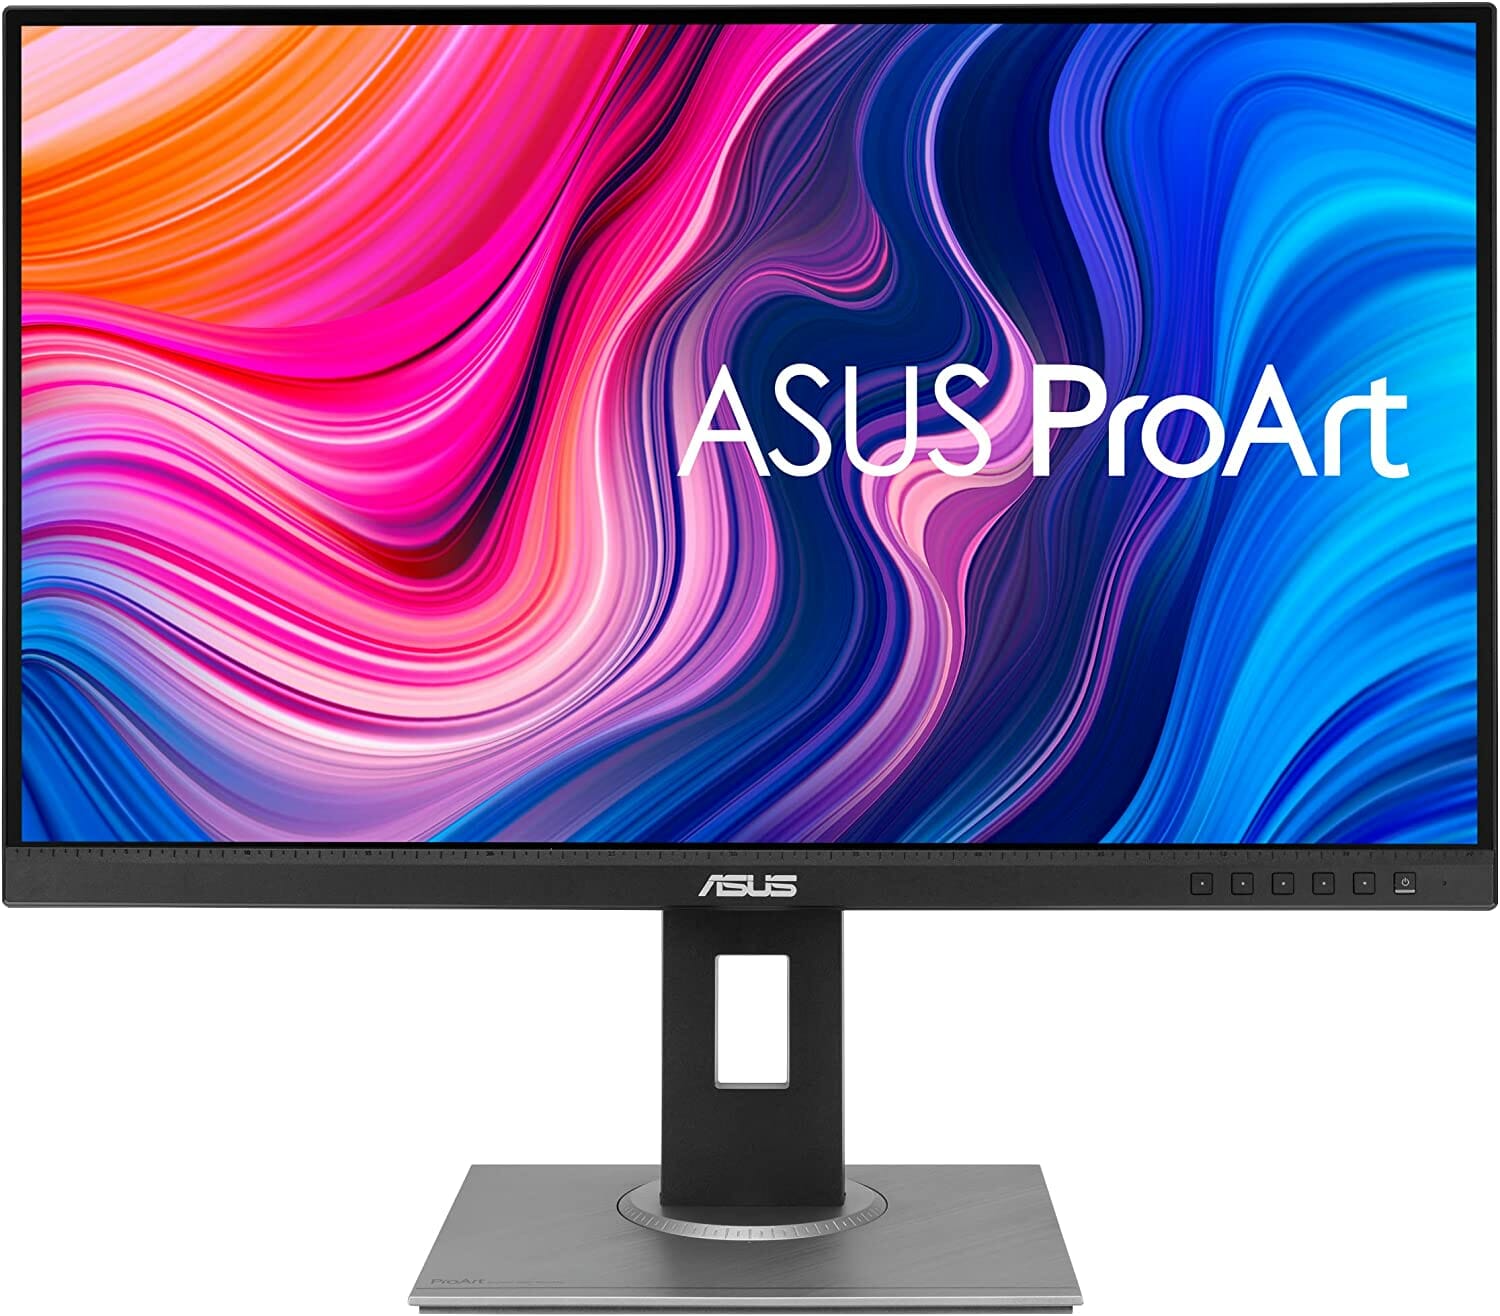  ASUS ProArt Display PA278QV 27” WQHD (2560 x 1440) Monitor